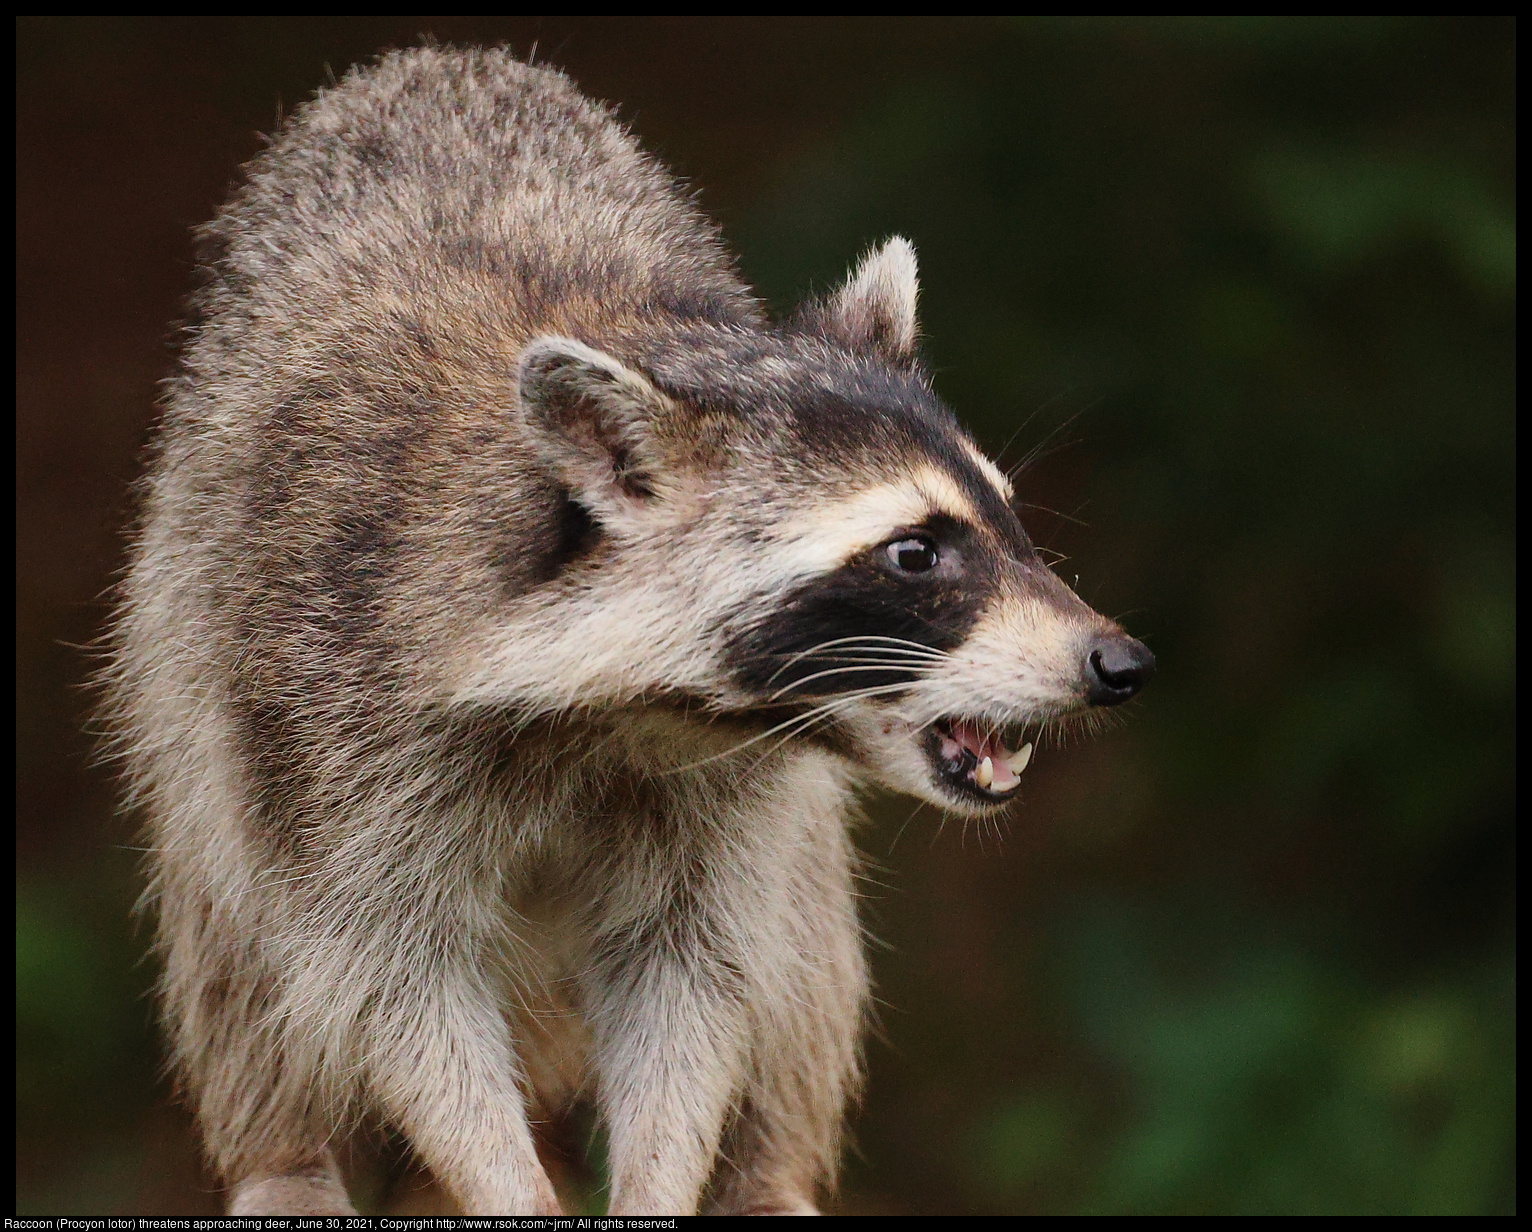 Raccoon (Procyon lotor), June 30, 2021